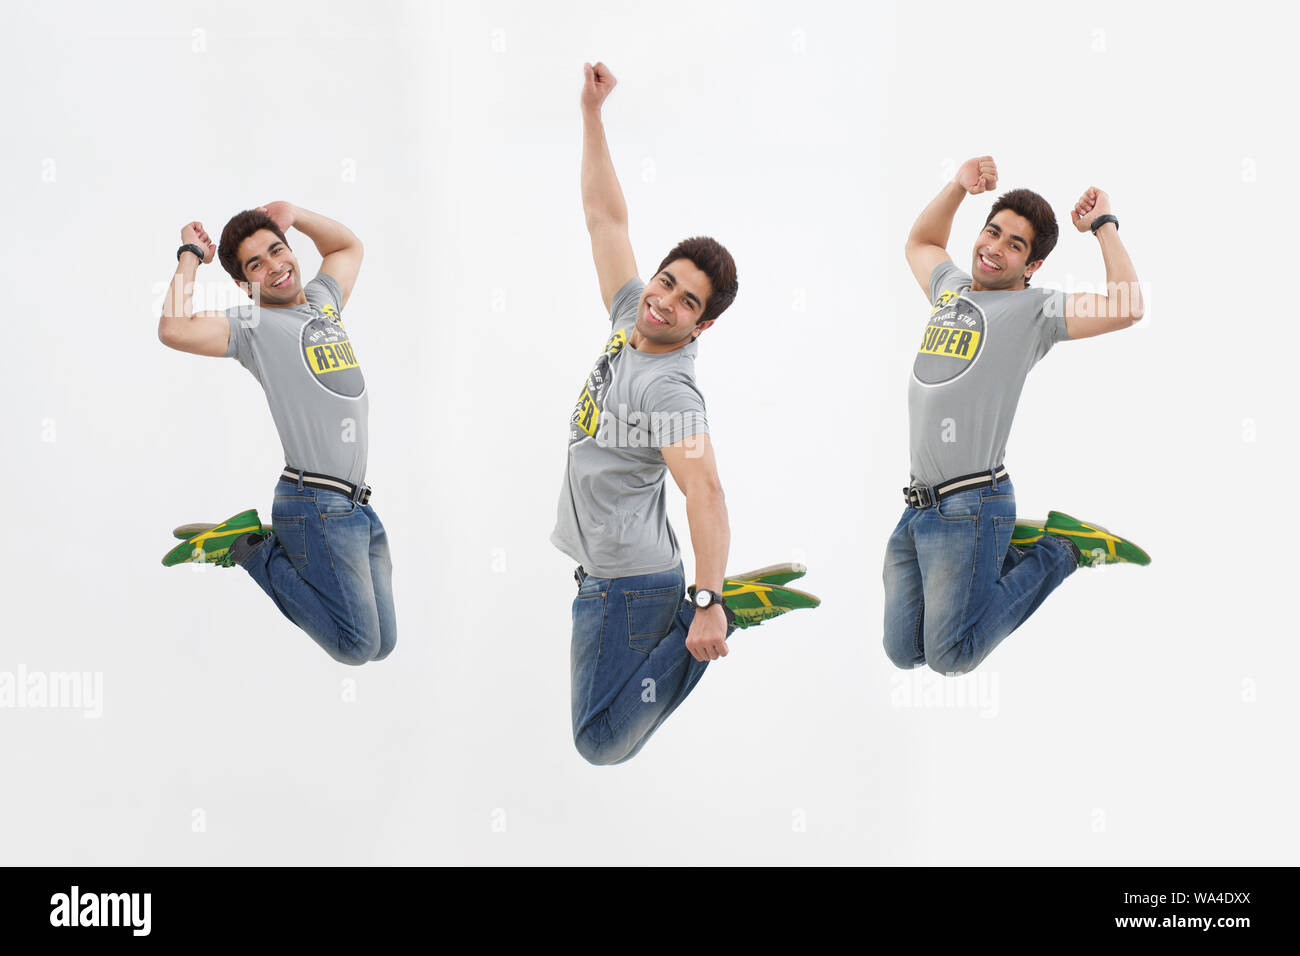 Mehrere Bilder eines jungen Mannes, der in der Luft springt Stockfoto